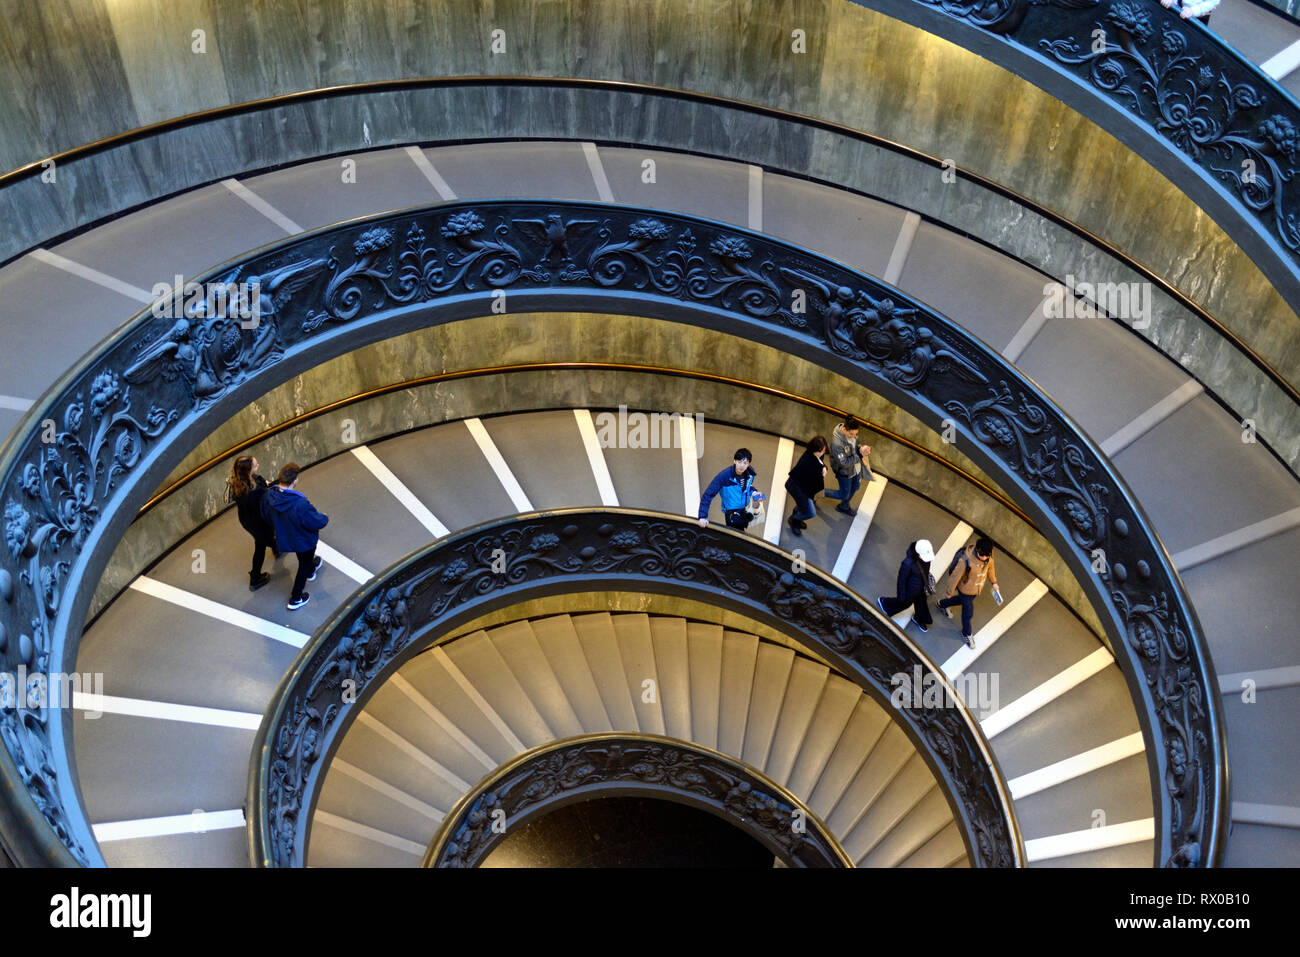 Les touristes en ordre décroissant hélice double escalier en spirale, escalier ou Bramante, conçu par Giuseppo Momo dans Pio-Clementine 1932, Musée, Musées du Vatican Banque D'Images